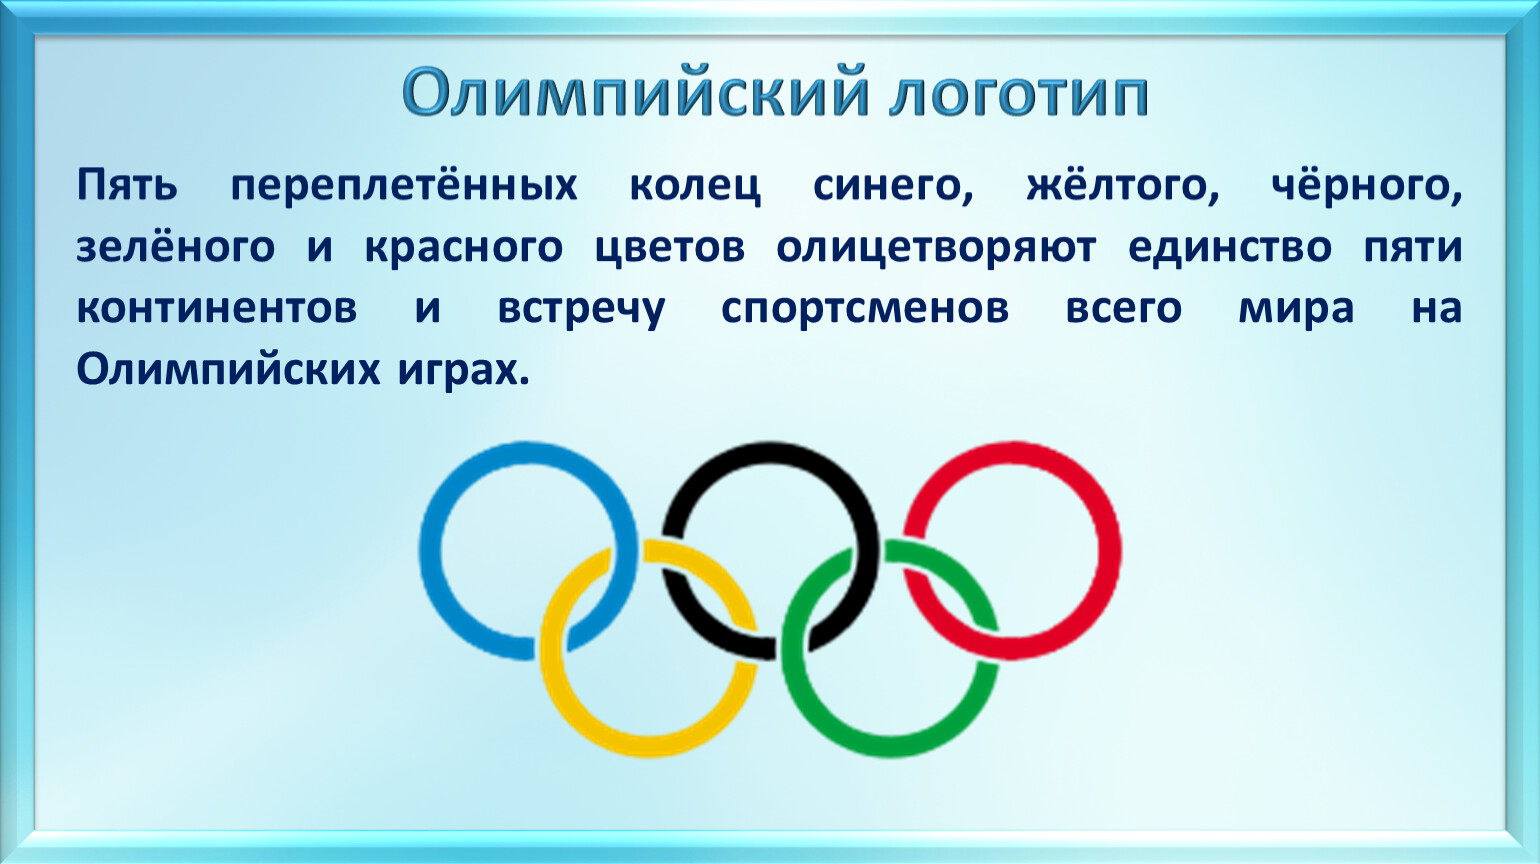 Цвета символа Олимпийских игр